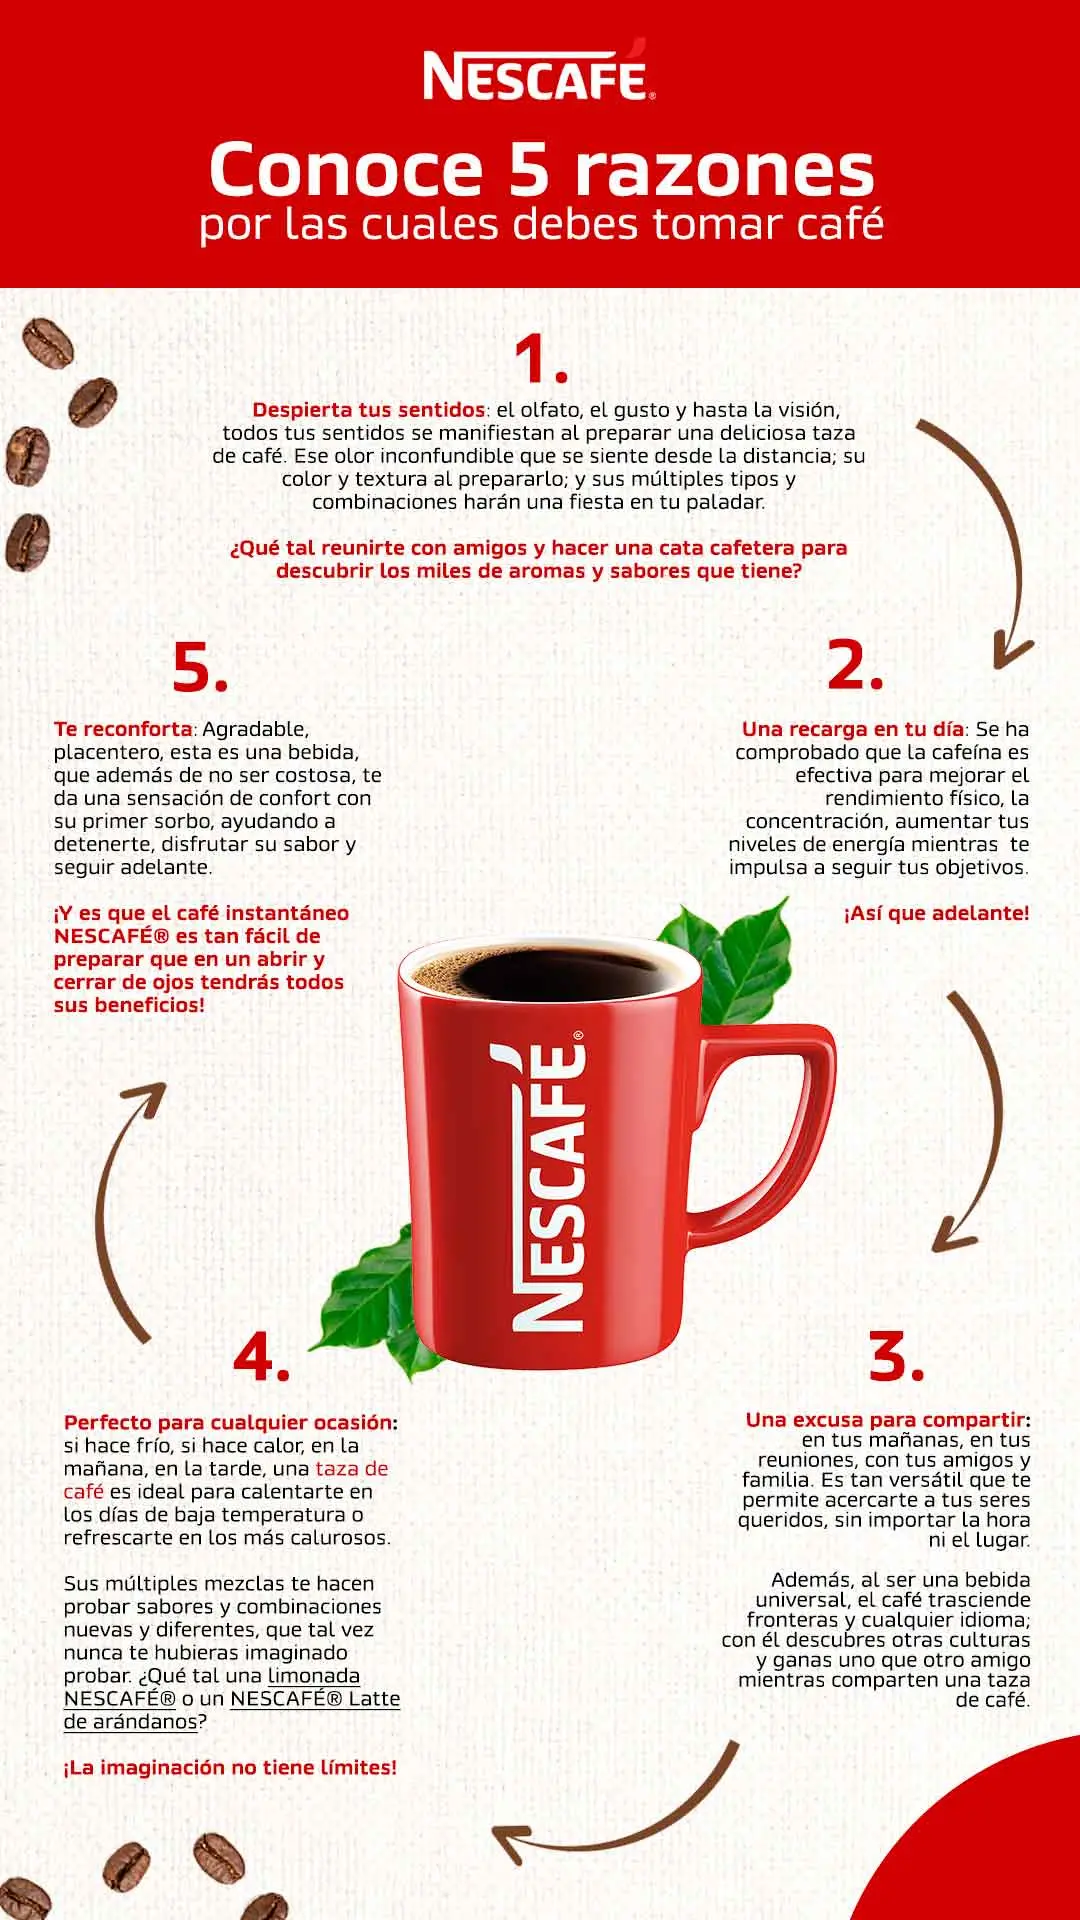 como es mejor tomar el cafe - Cuál es la manera más saludable de tomar café